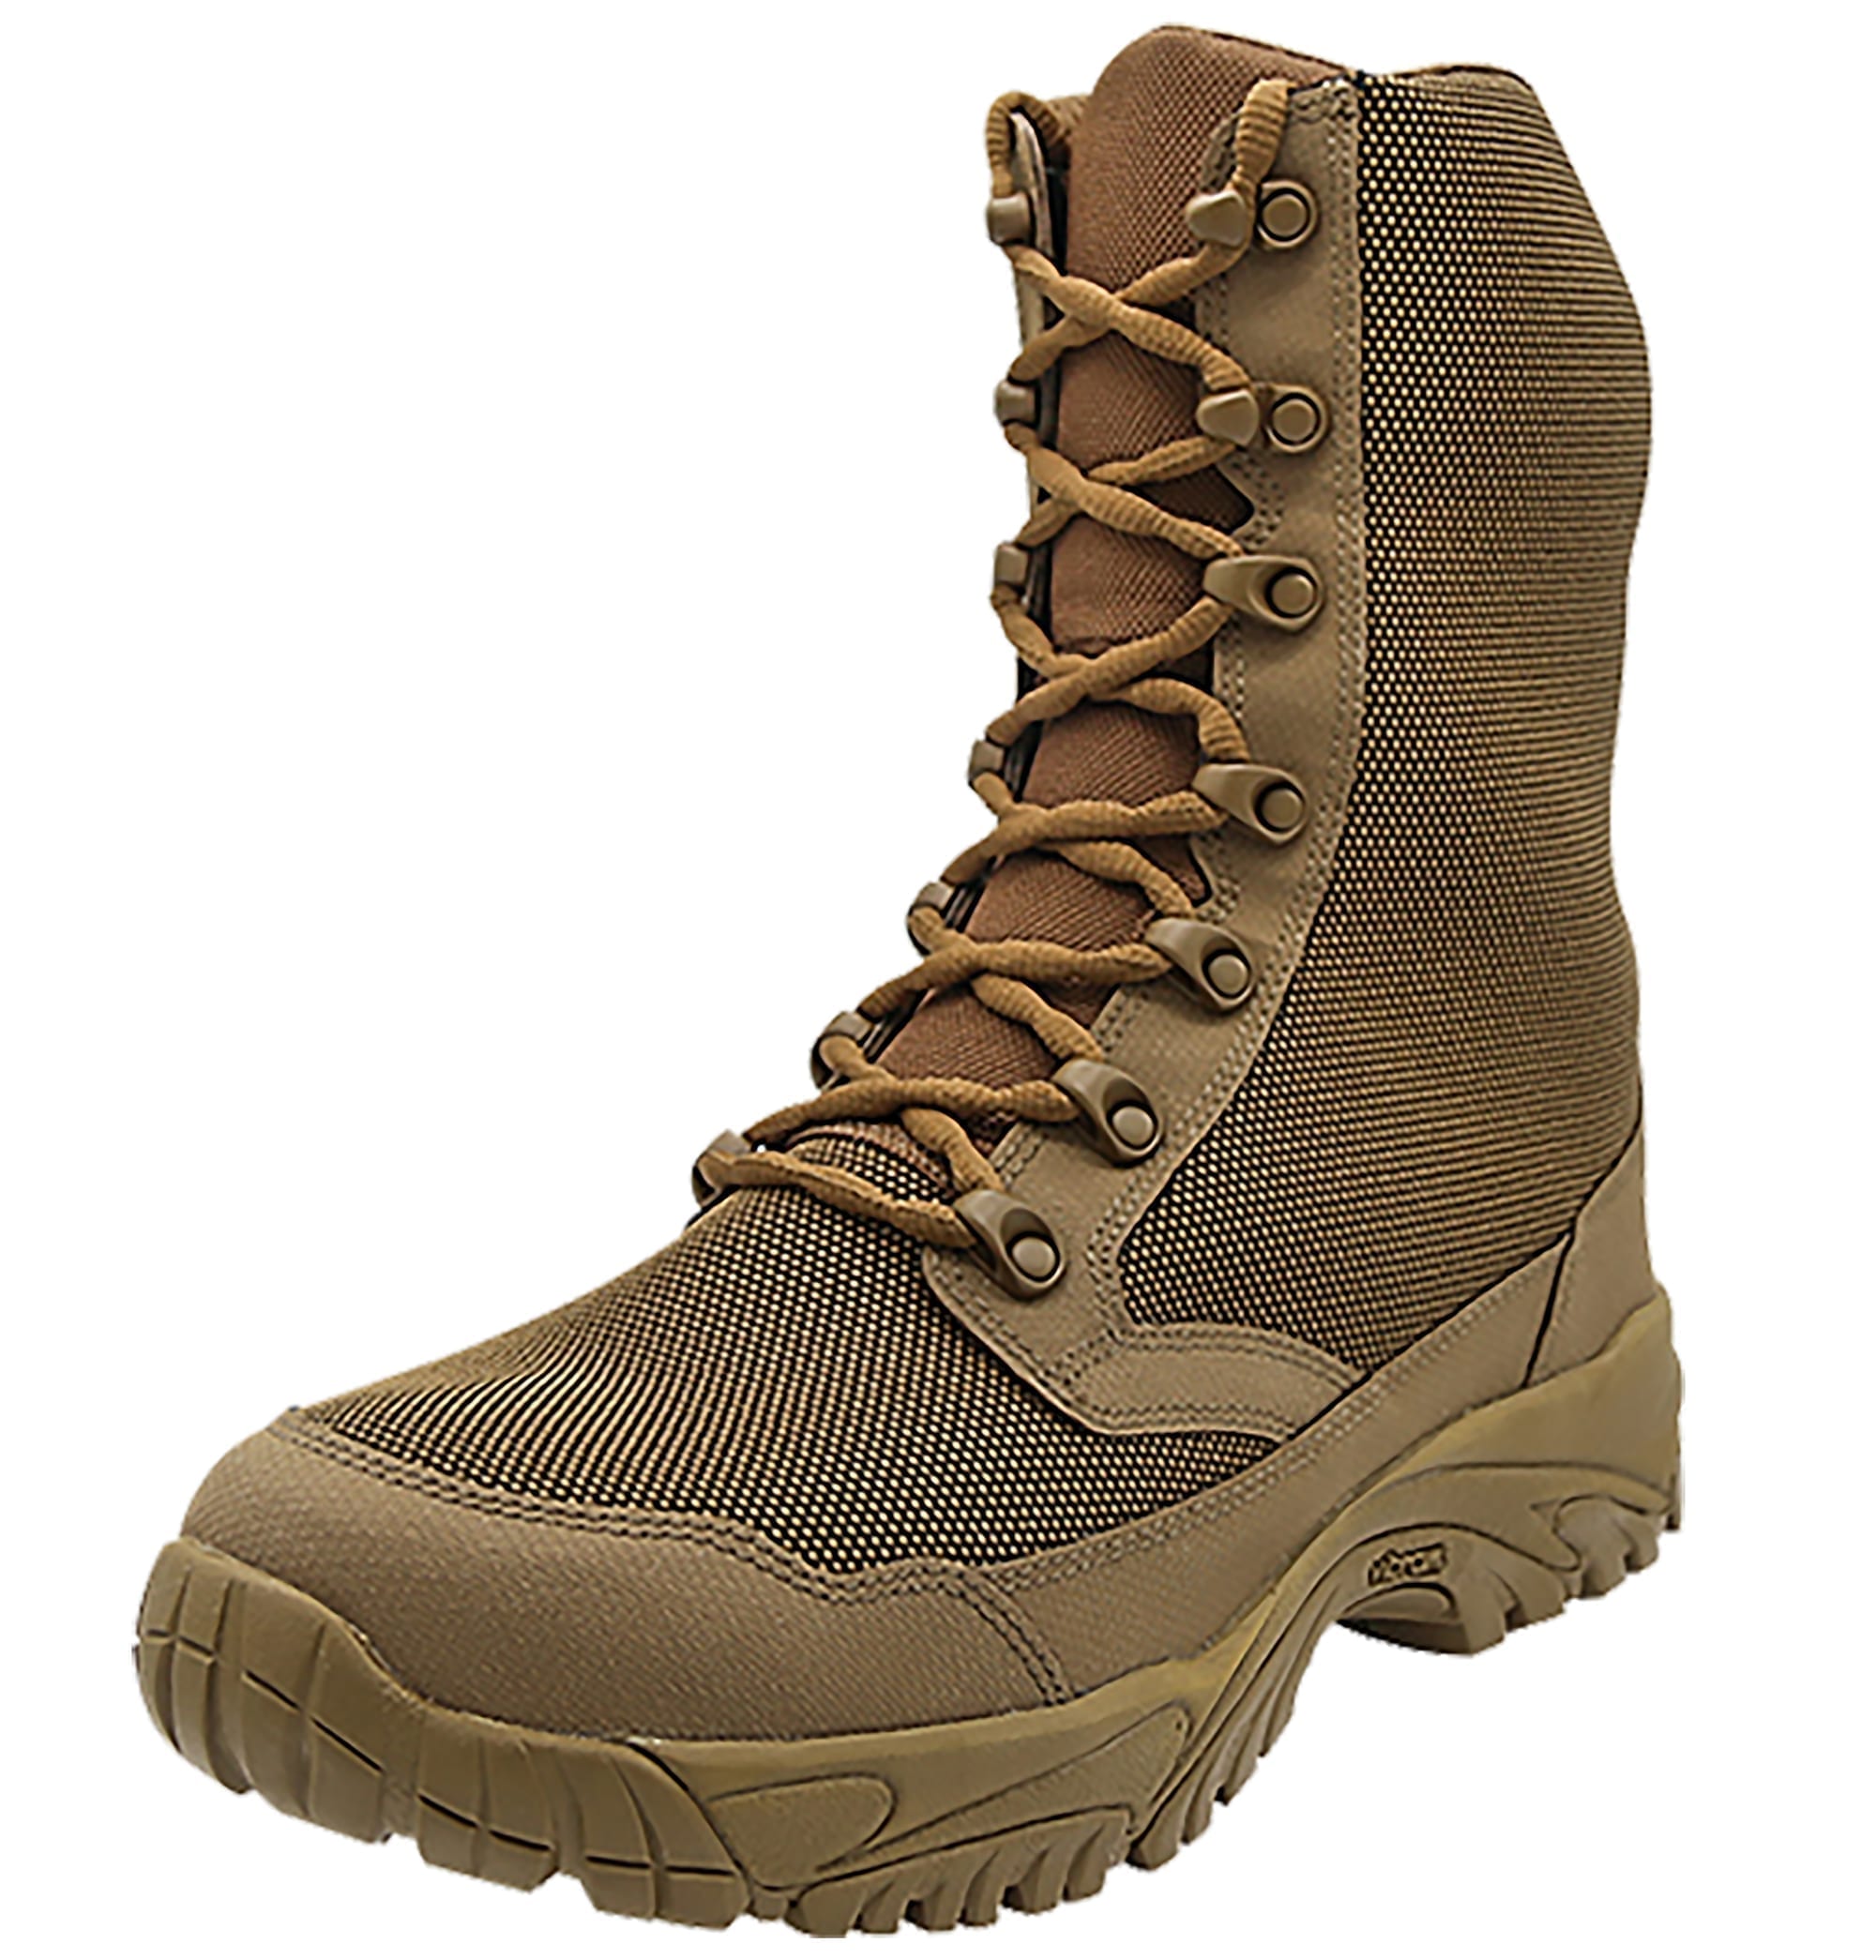 lightweight outdoor boots